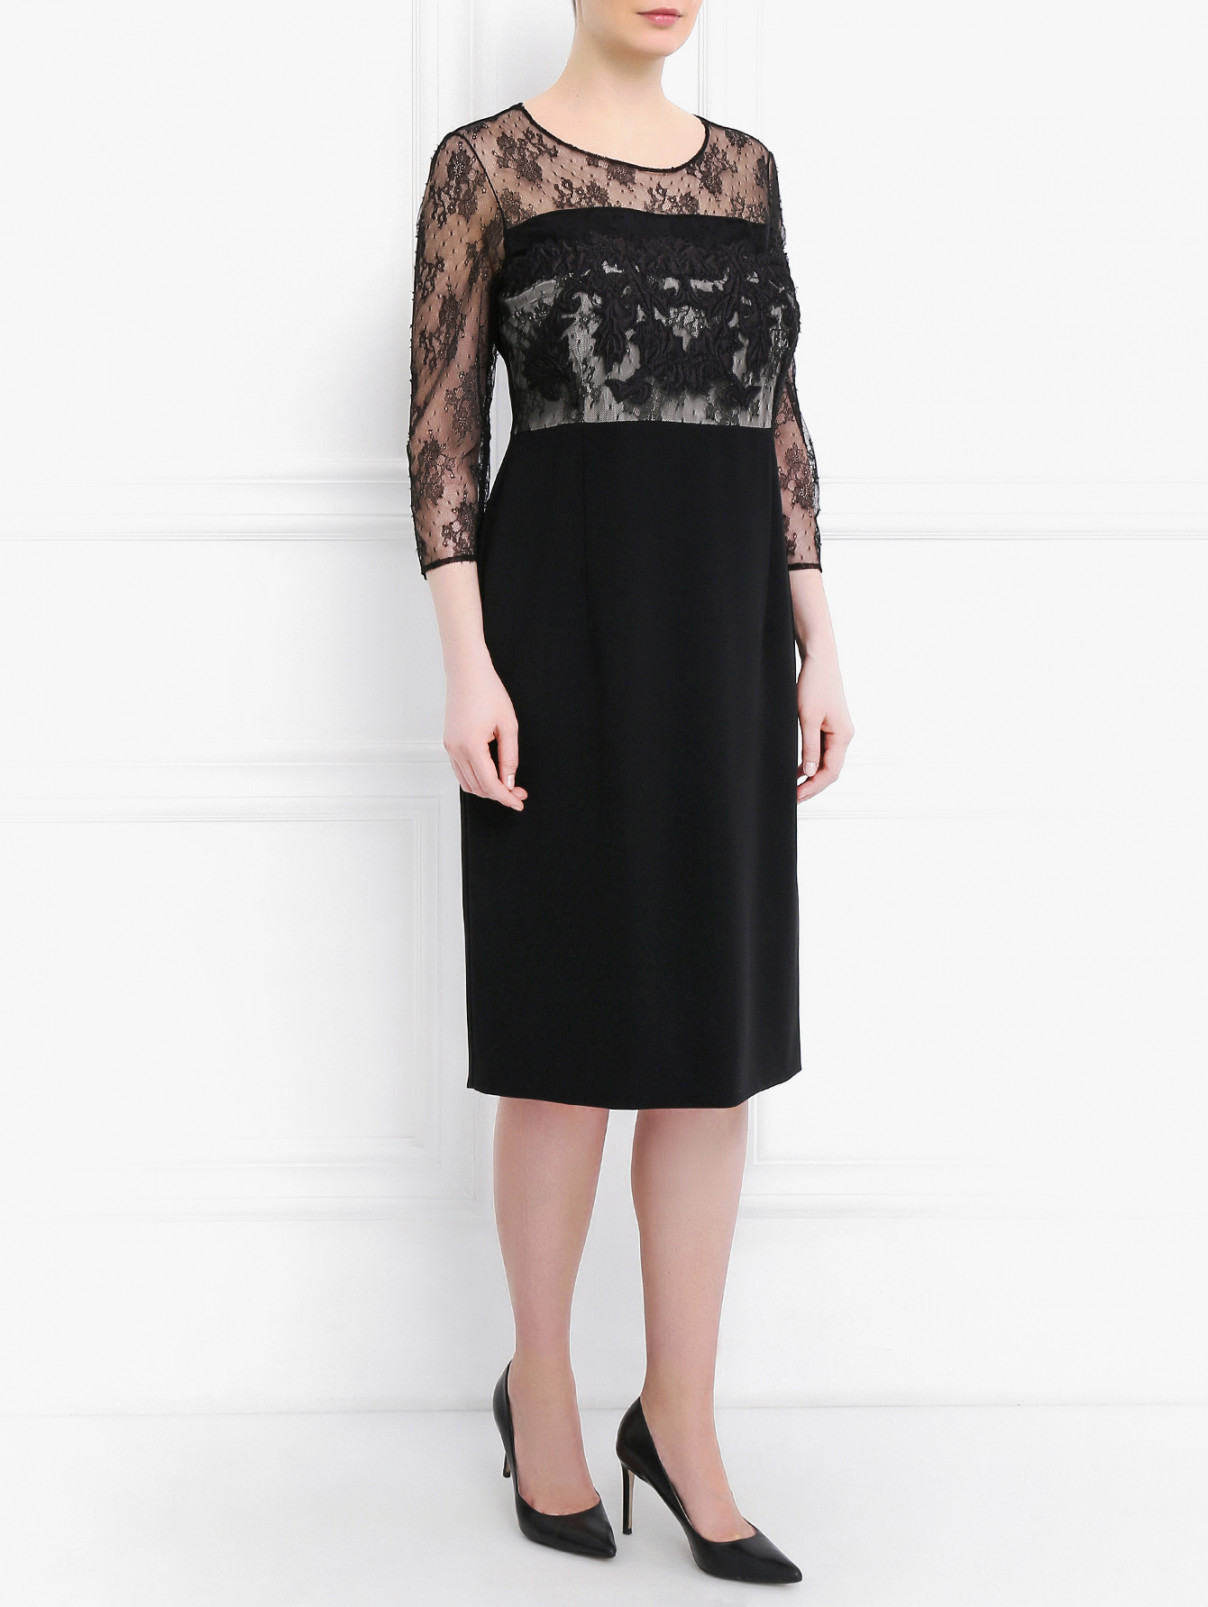 Платье-футляр с контрастной вставкой из кружева Marina Rinaldi  –  Модель Общий вид  – Цвет:  Черный